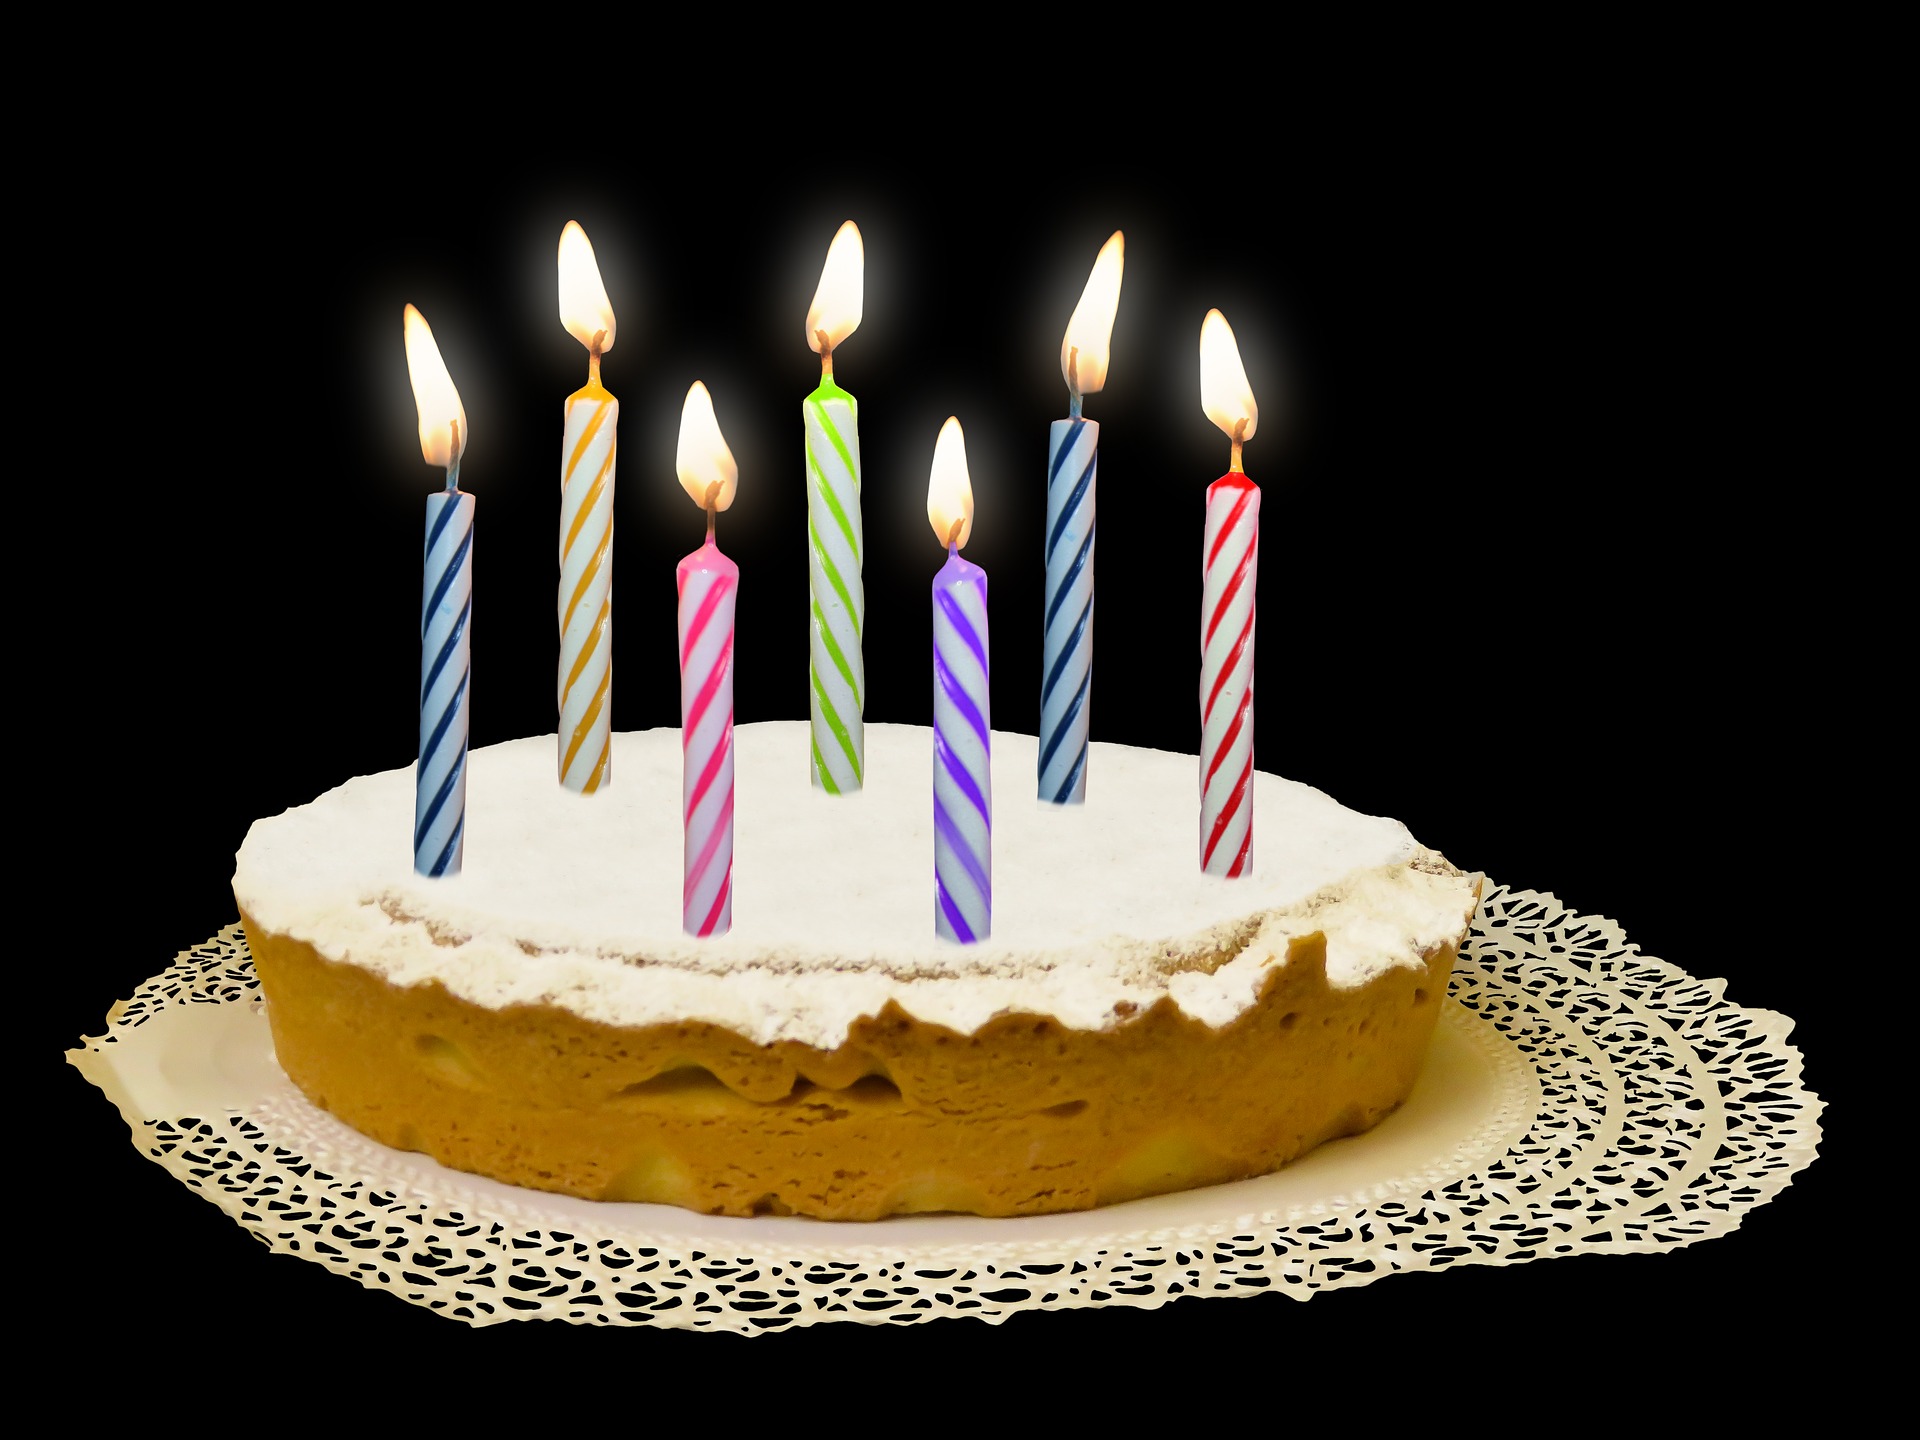 60 Anni Ecco Le Migliori Idee Per Come Festeggiare Il Compleanno